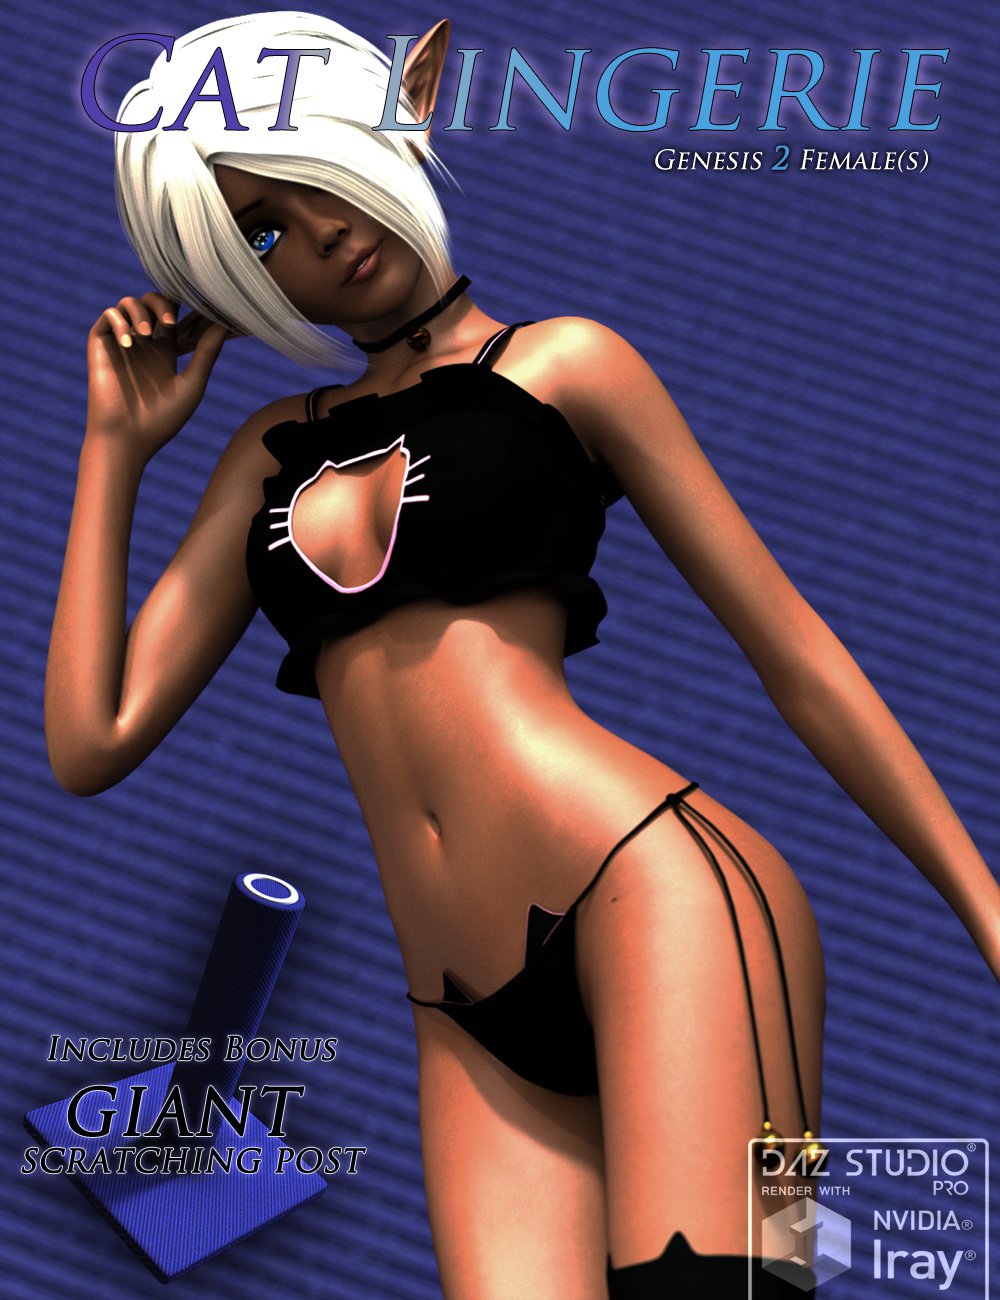 CatLingerie for Genesis 2 Females_DAZ3D下载站